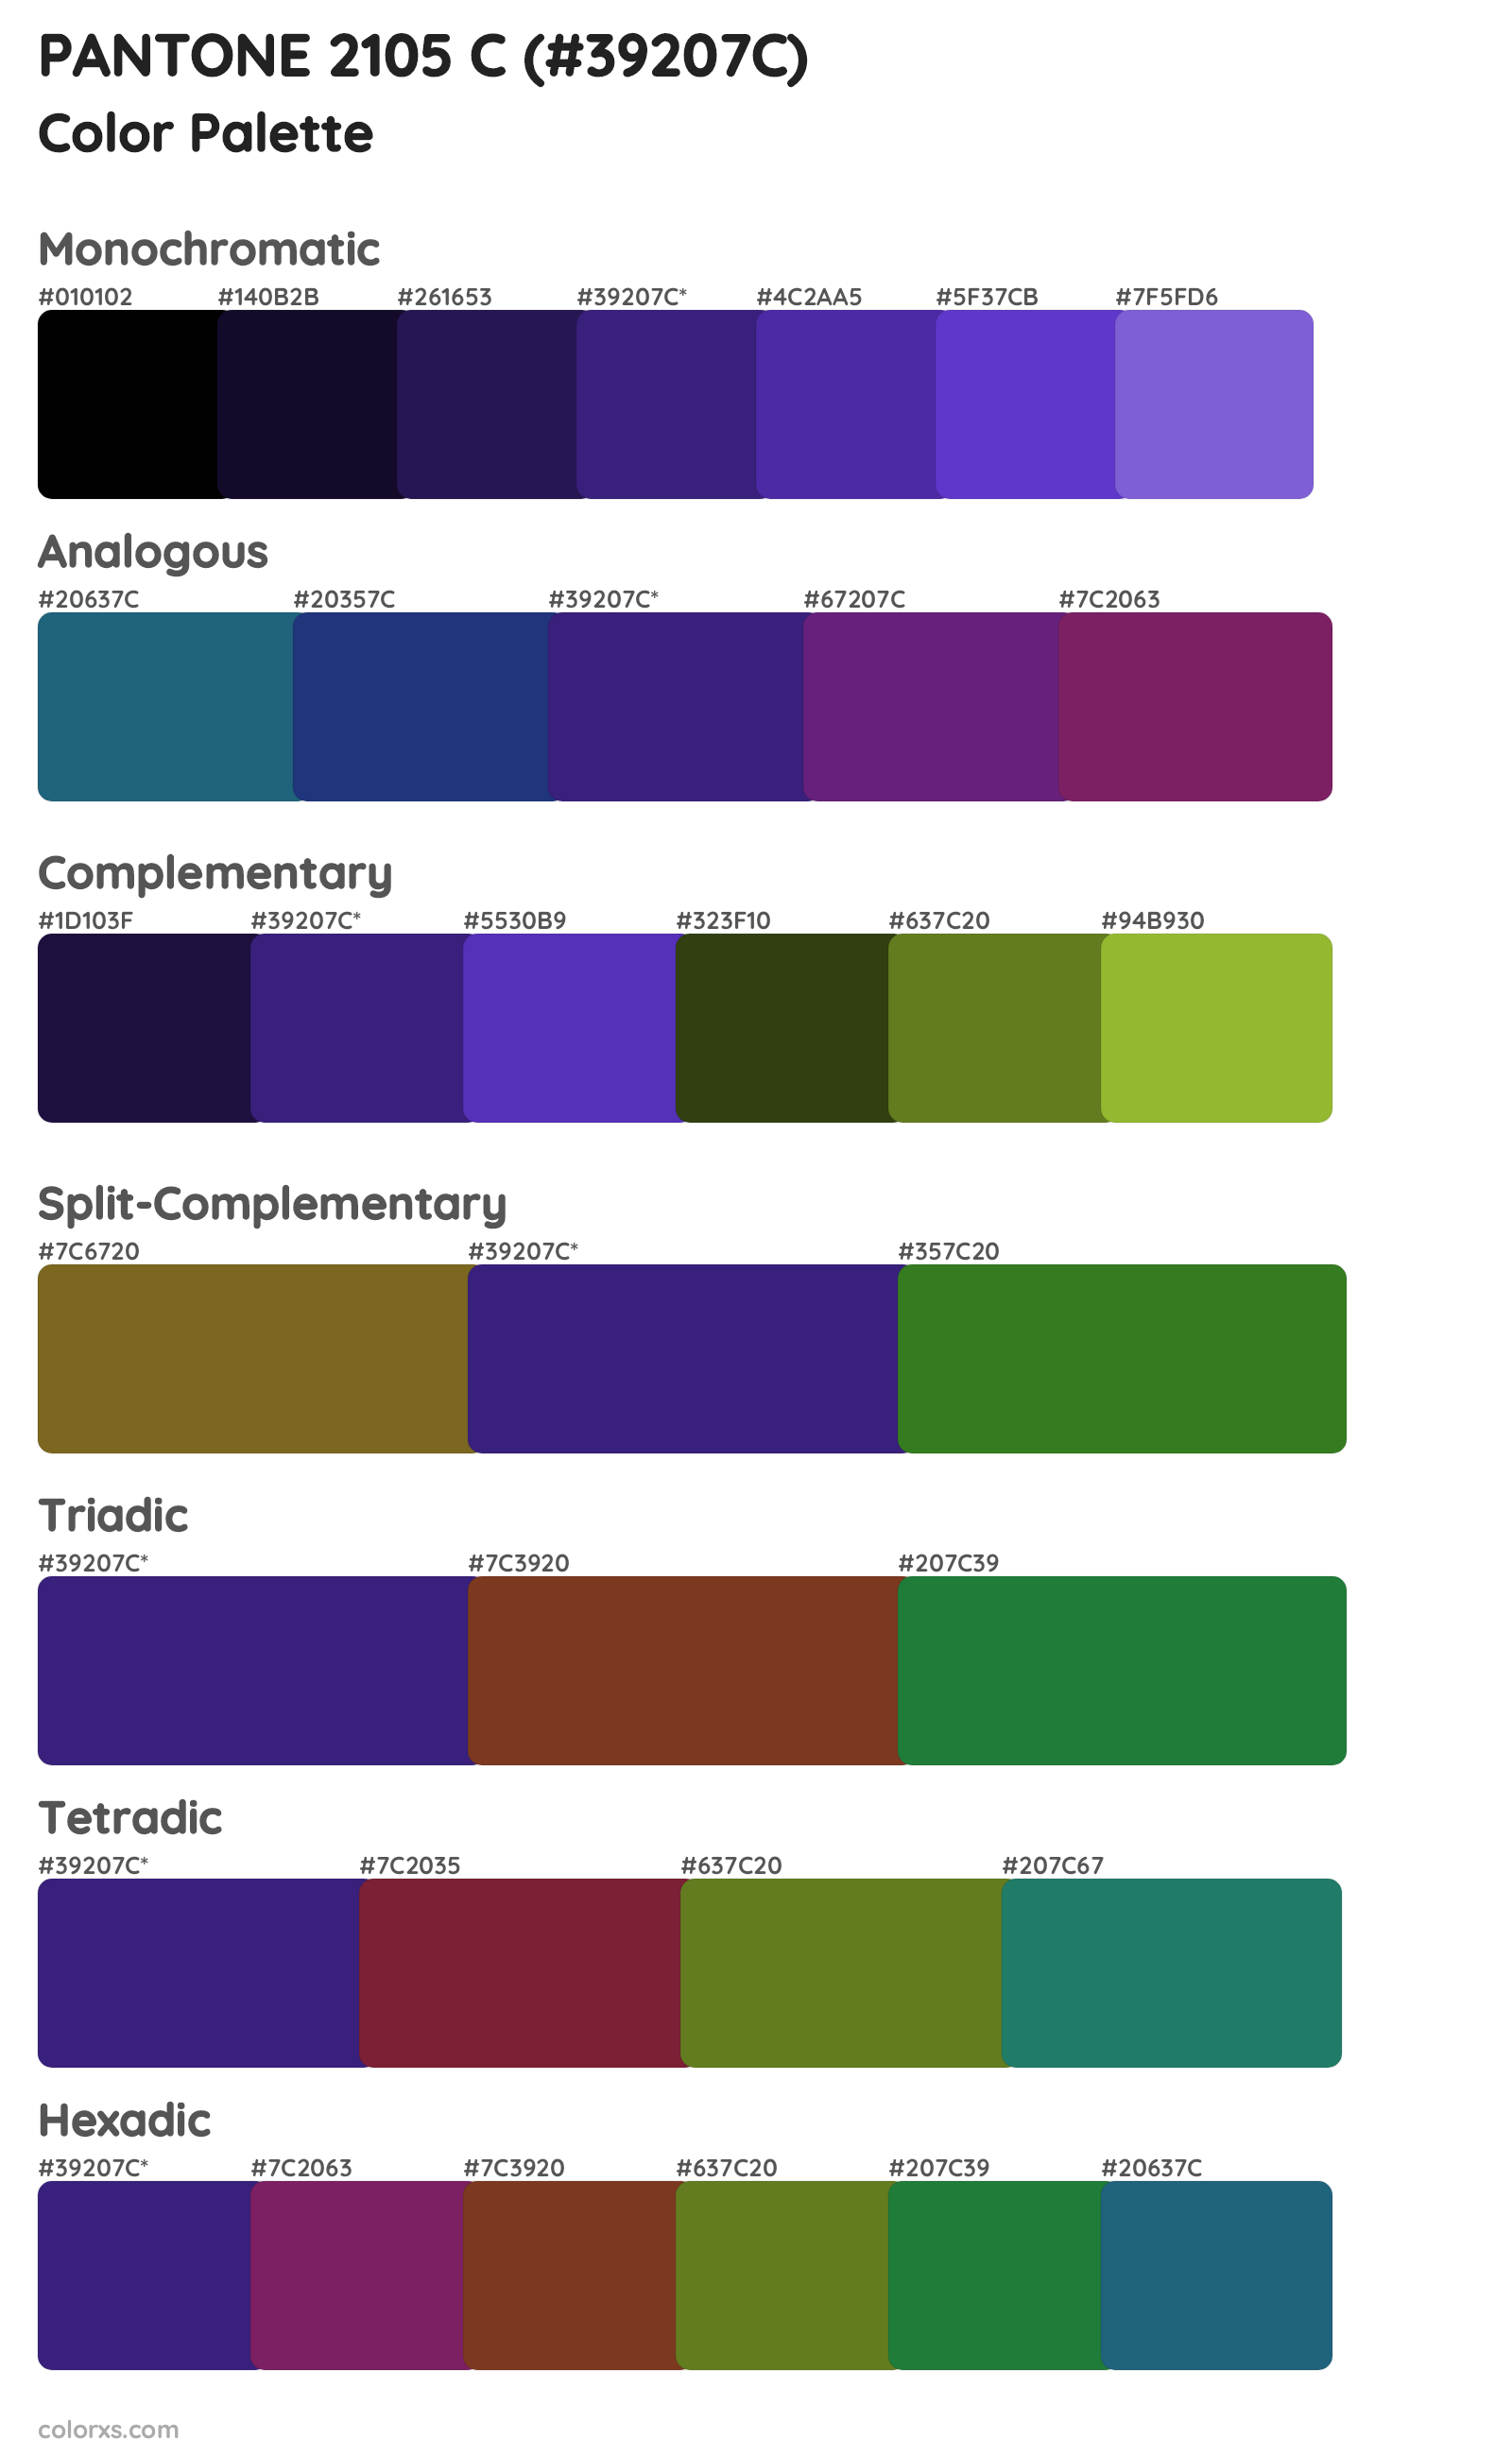 PANTONE 2105 C Color Scheme Palettes